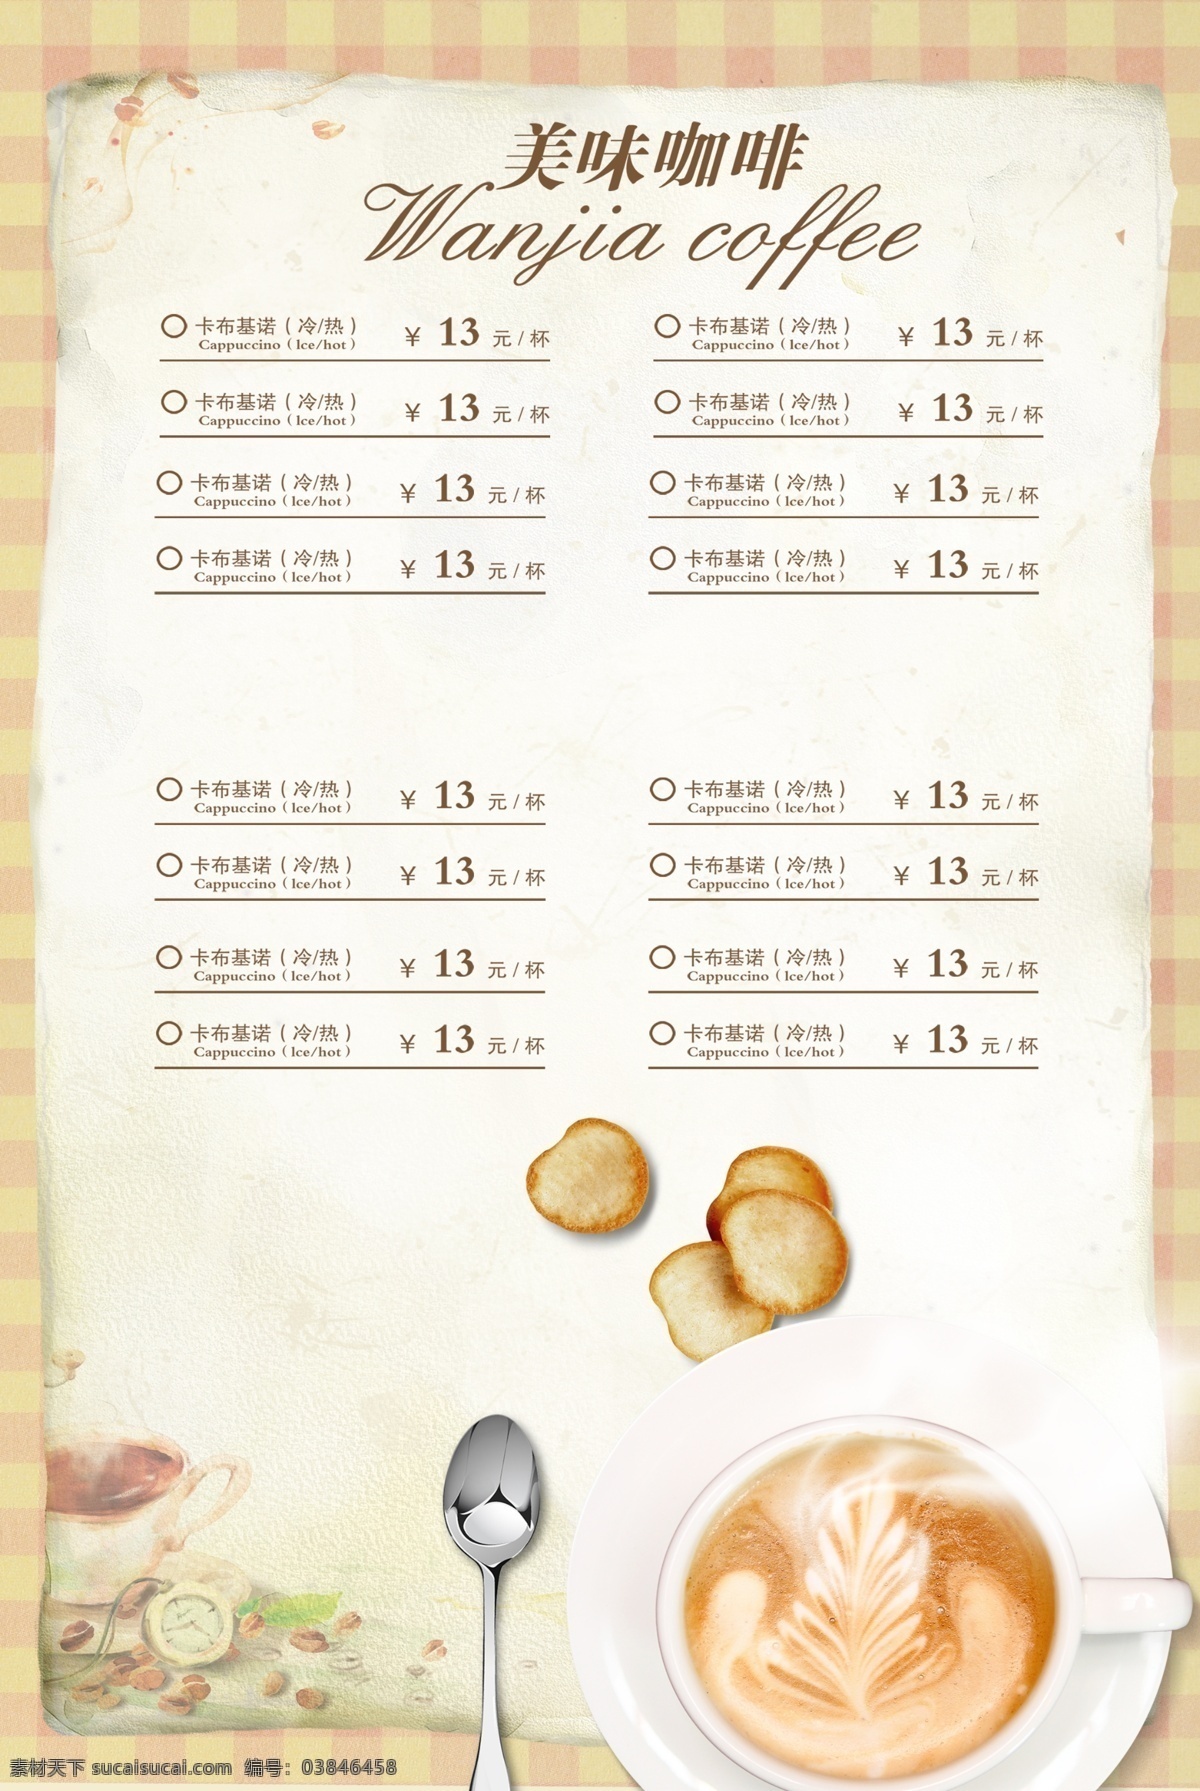 咖啡吧 菜单 模板 咖啡 饮品 小吃 糕点 下午茶 茶歇 甜品 菜单模板 菜单设计 模板设计